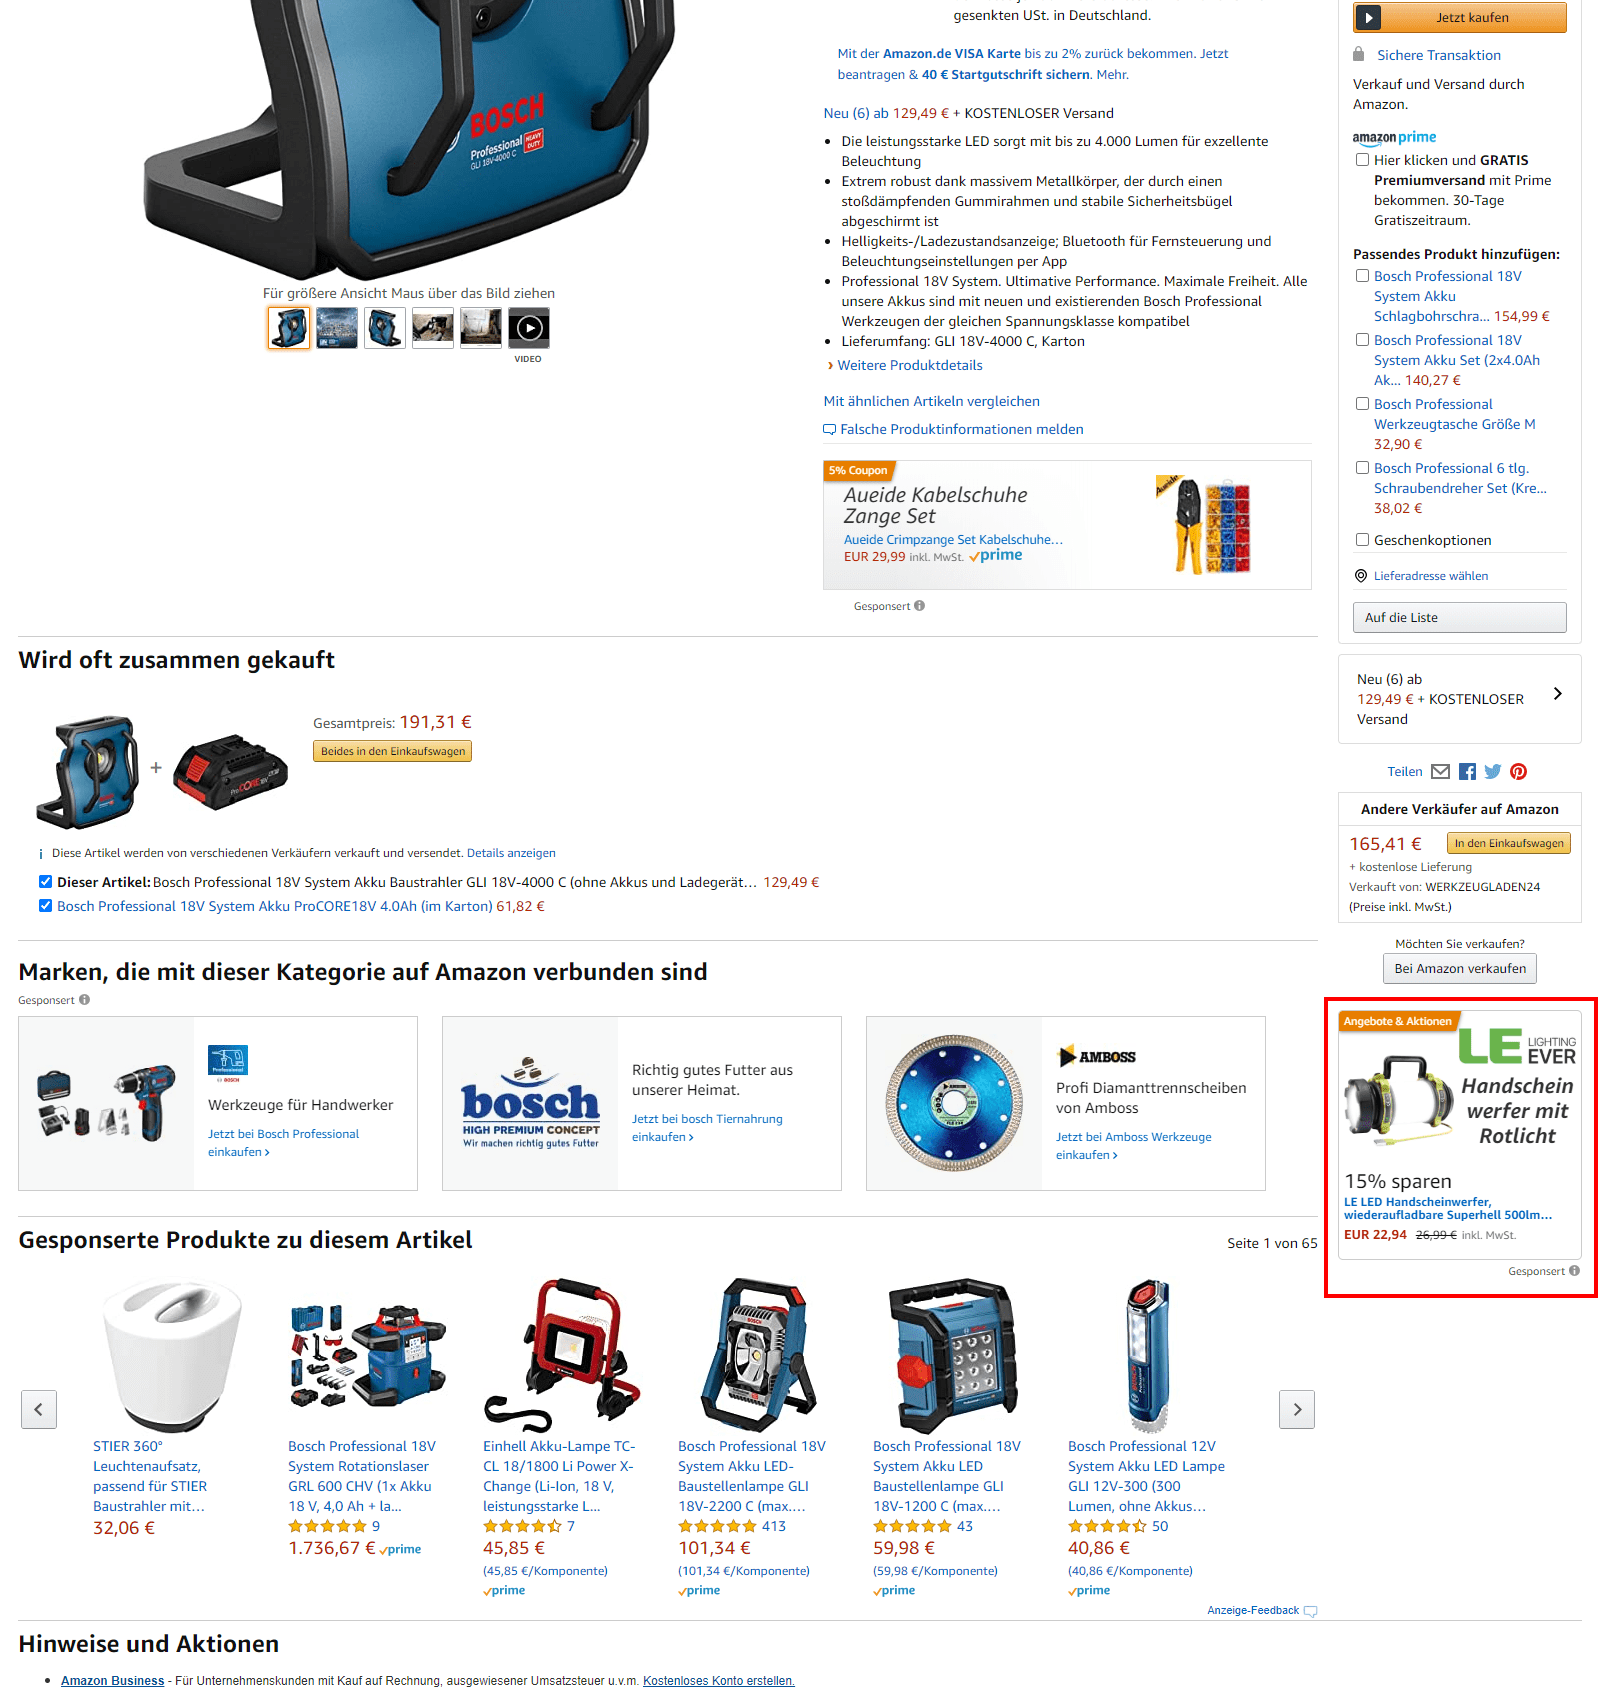 Amazon Sponsored Display Anzeige auf der Produktdetailseite unter der Buy Box